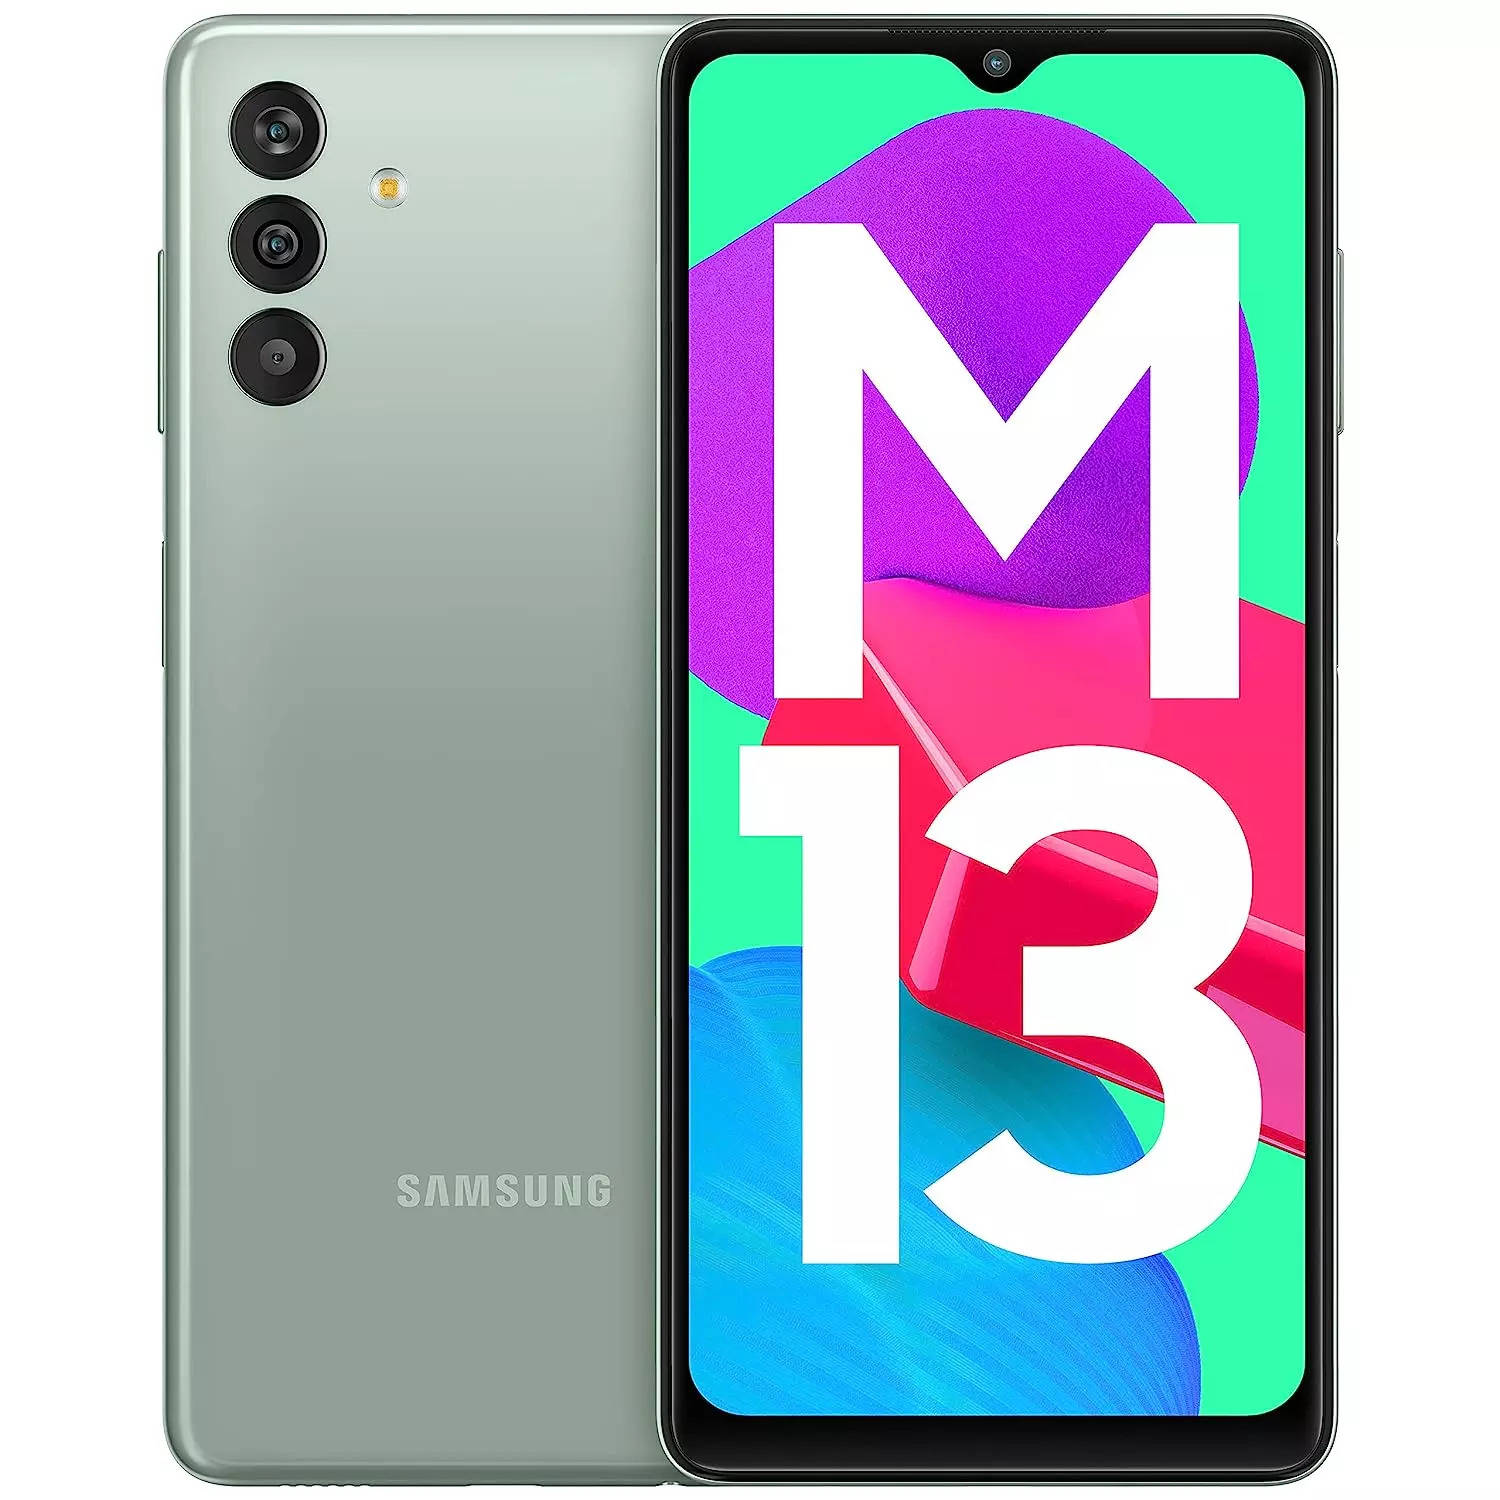 Samsung M13